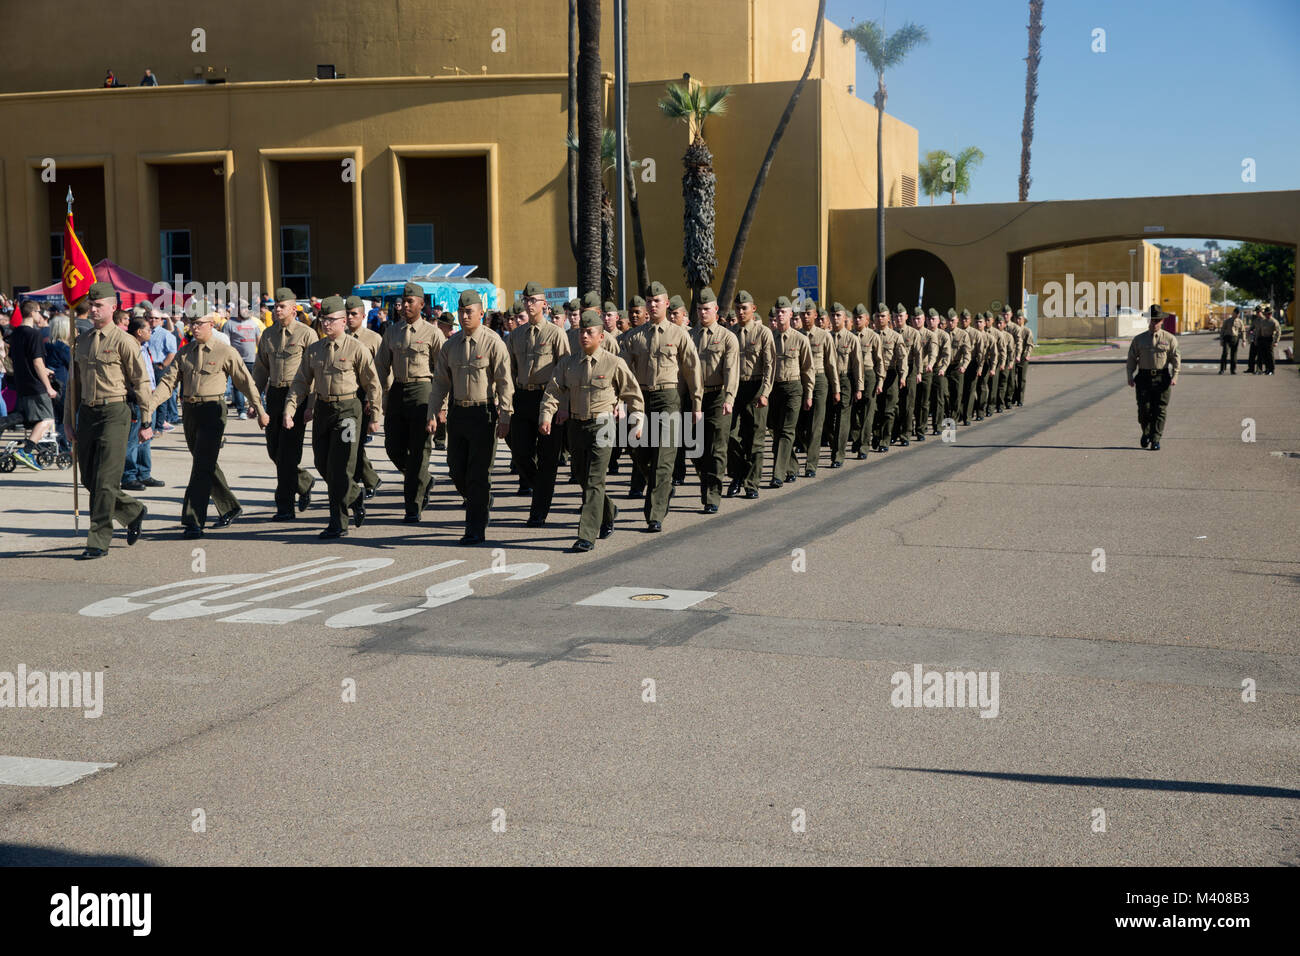 La nouvelle société de l'écho des Marines, 2e Bataillon d'instruction des recrues, retrouver leurs proches en journée familiale au Marine Corps Recruter Depot San Diego, aujourd'hui. Après près de 13 semaines de formation, les Marines de la Compagnie Echo va officiellement diplômée de l'instruction des recrues demain. Banque D'Images